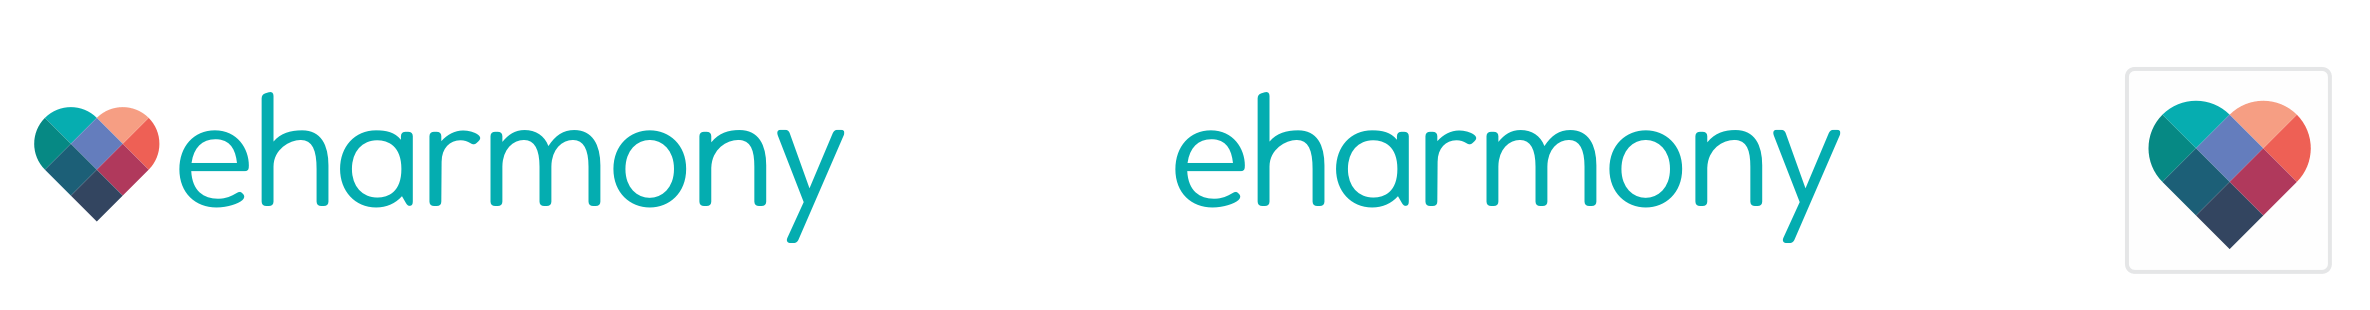 eHarmony Logo - Meet the New eharmony Logo